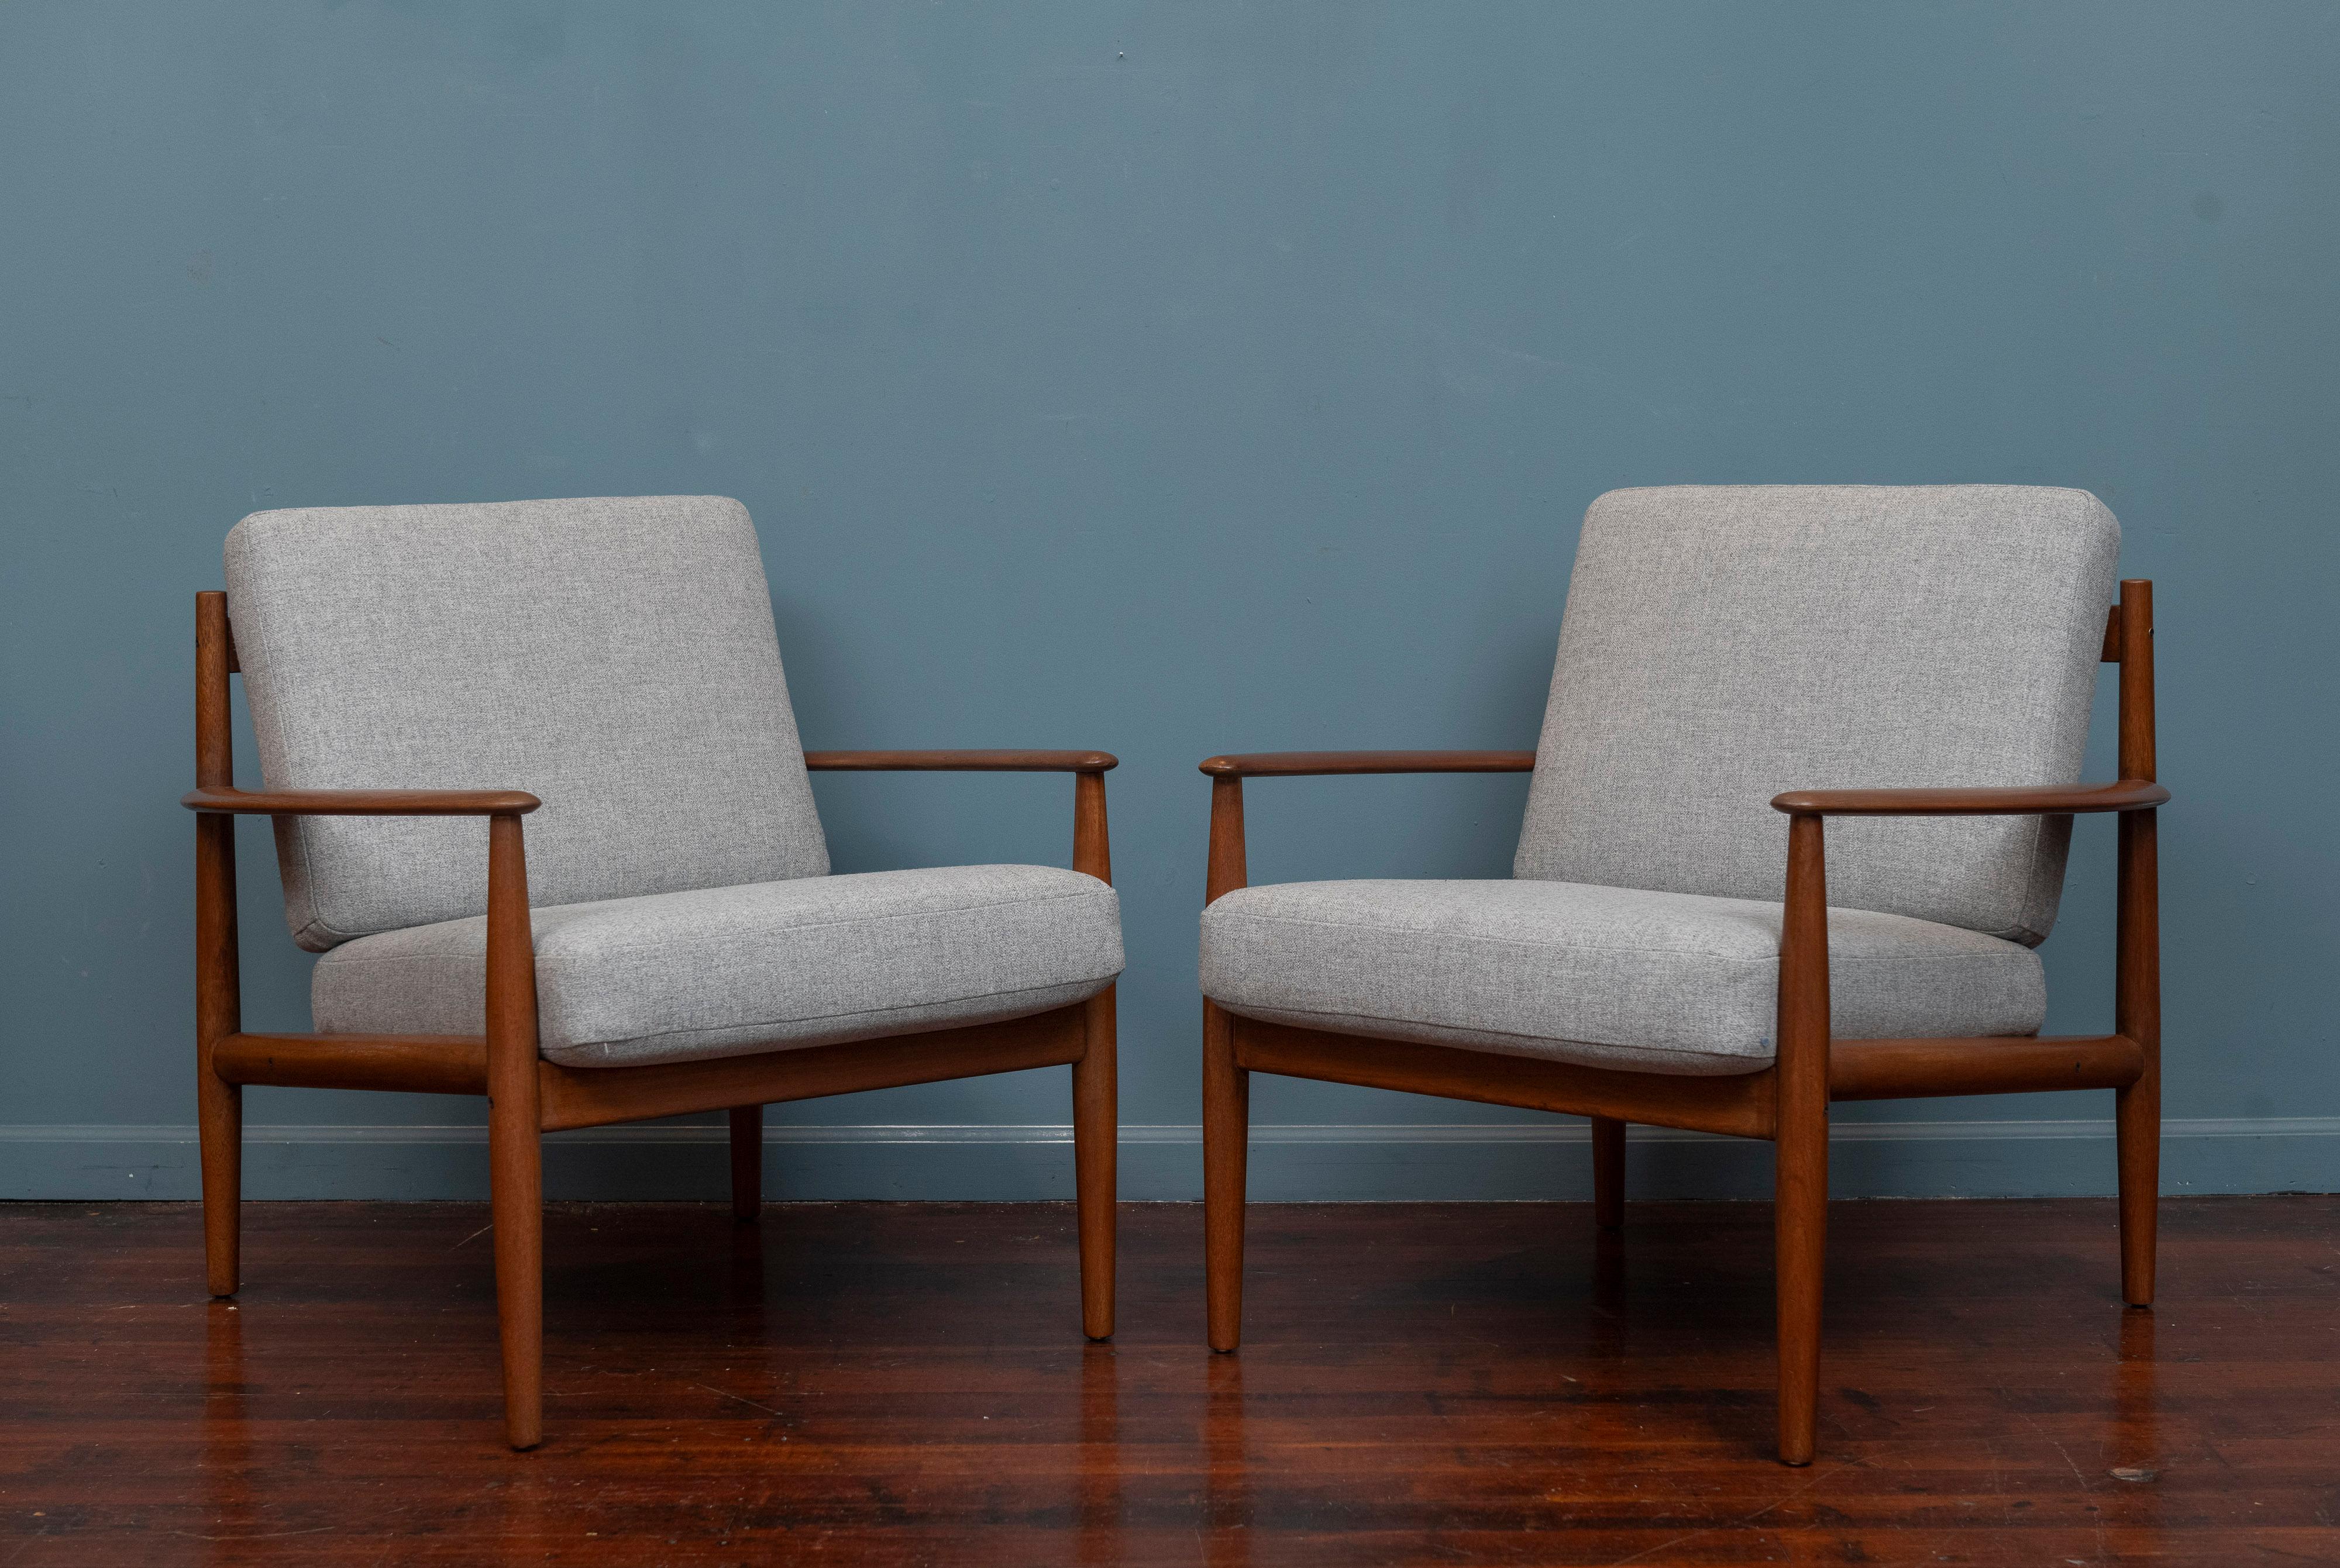 Grete Jalk design lounge chairs, Modell 128 für France & Son Dänemark. Wunderschöne Design-Loungesessel mit geschwungenen Armlehnen und einer attraktiven, doppelten Rückenlehne. Neu lackierte Teakholzrahmen, neu gepolstert mit 100% grauer Wolle.